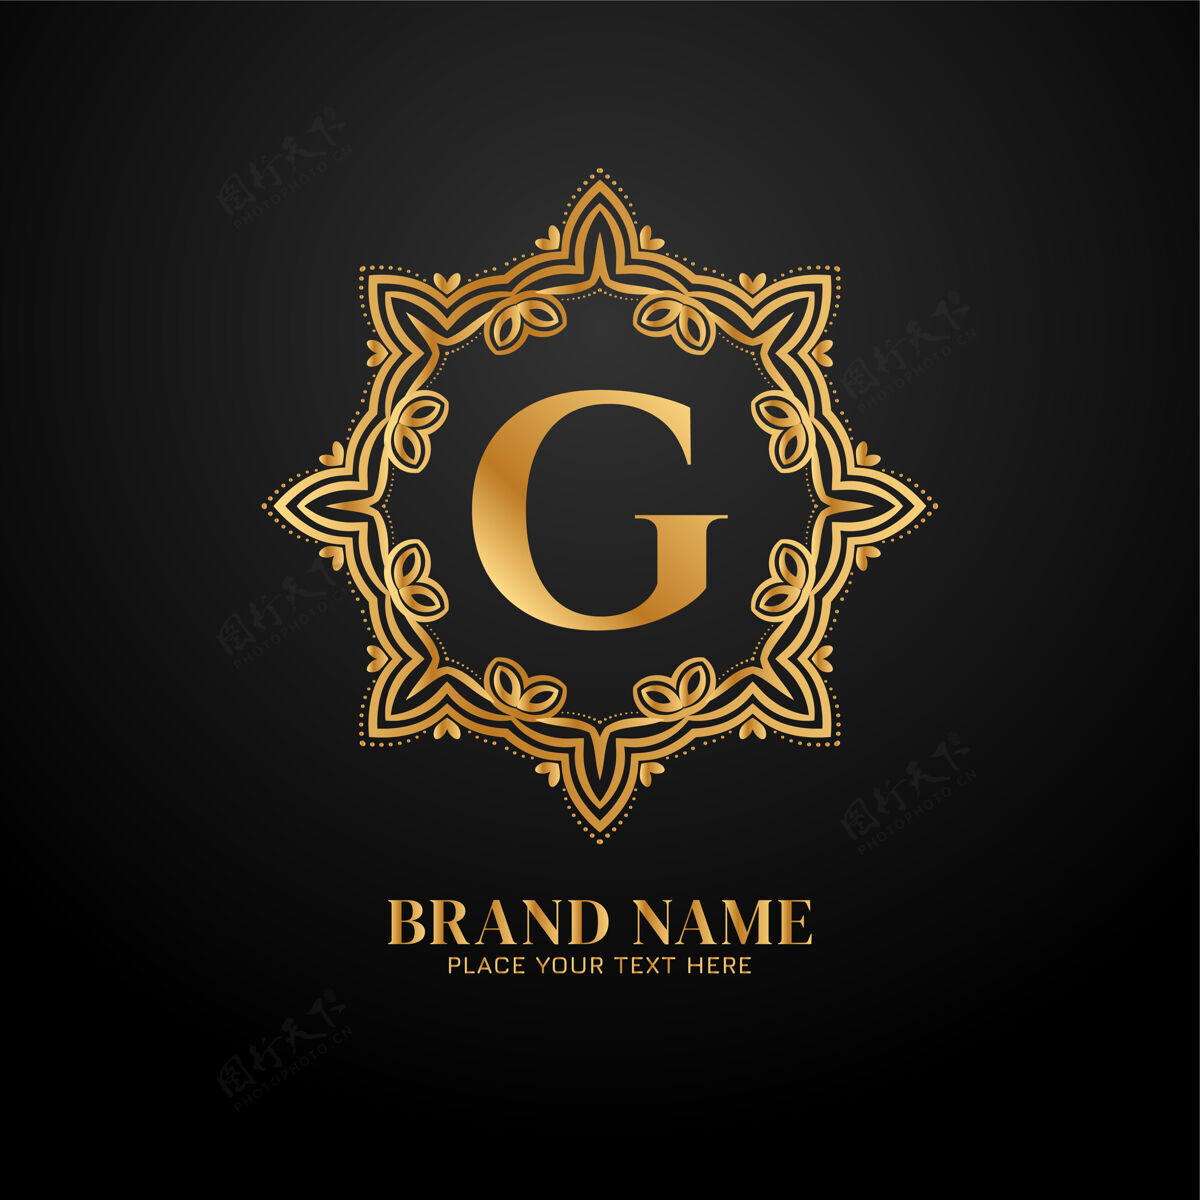 黄金字母g豪华高级品牌标志皇家装饰框架